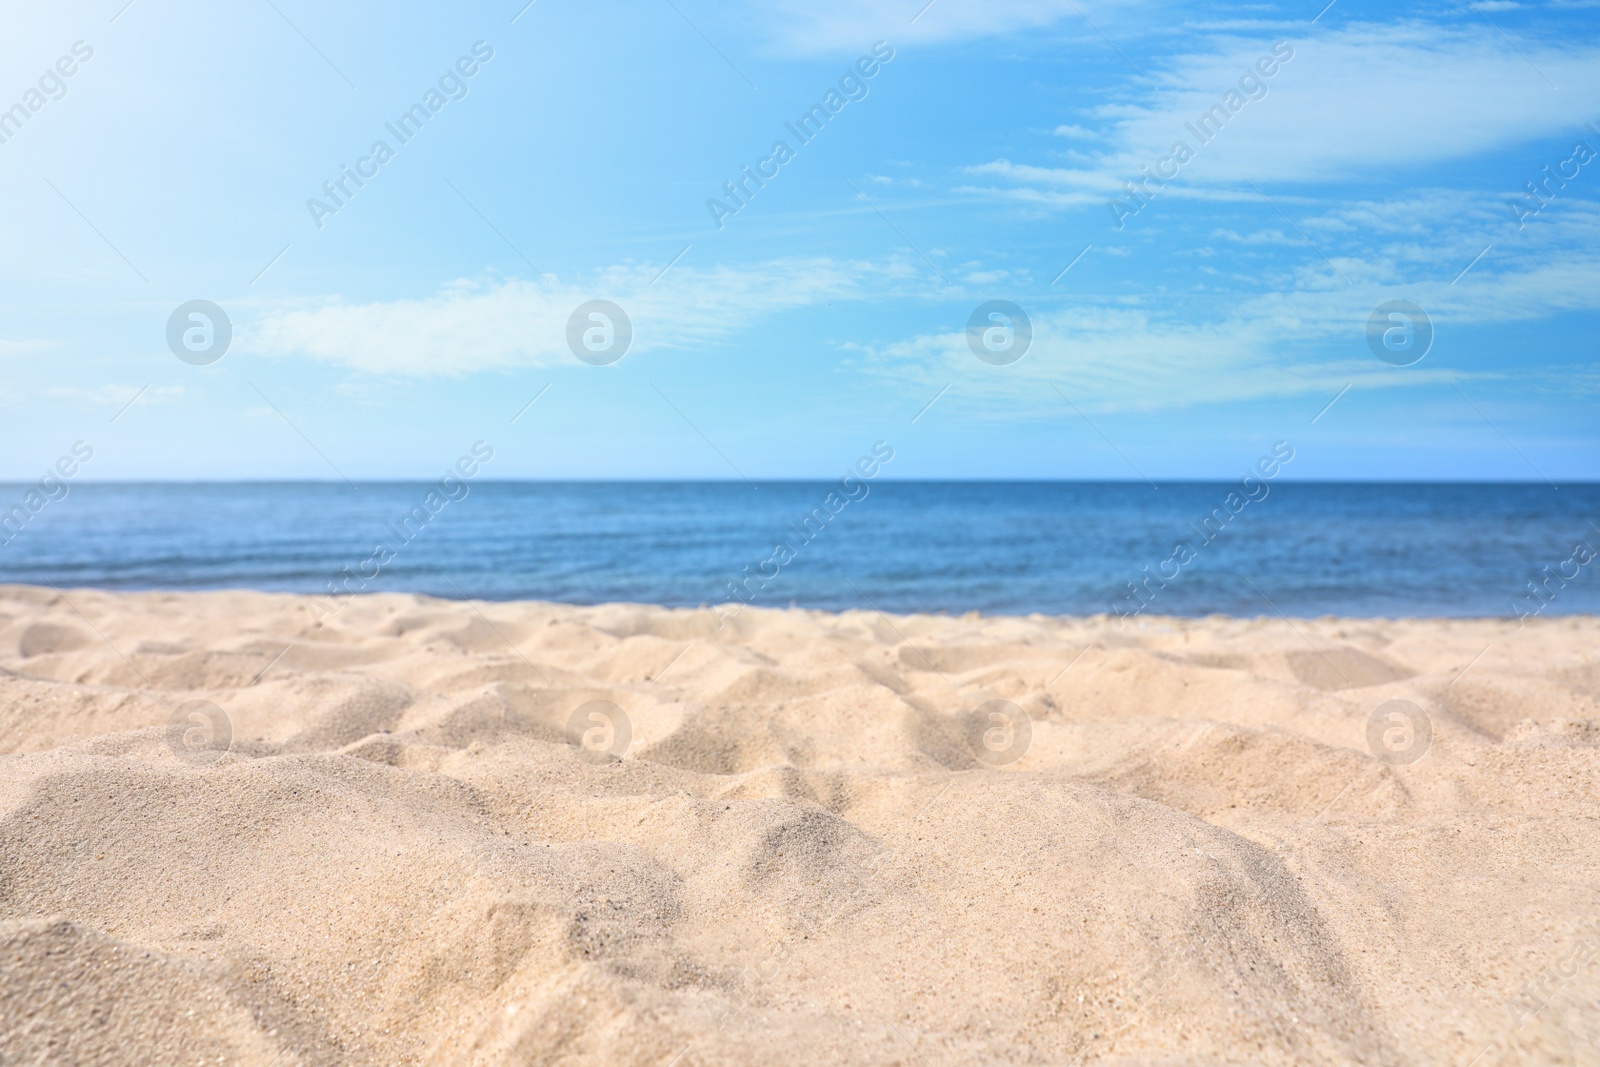 Photo of Sandy beach near sea on sunny day